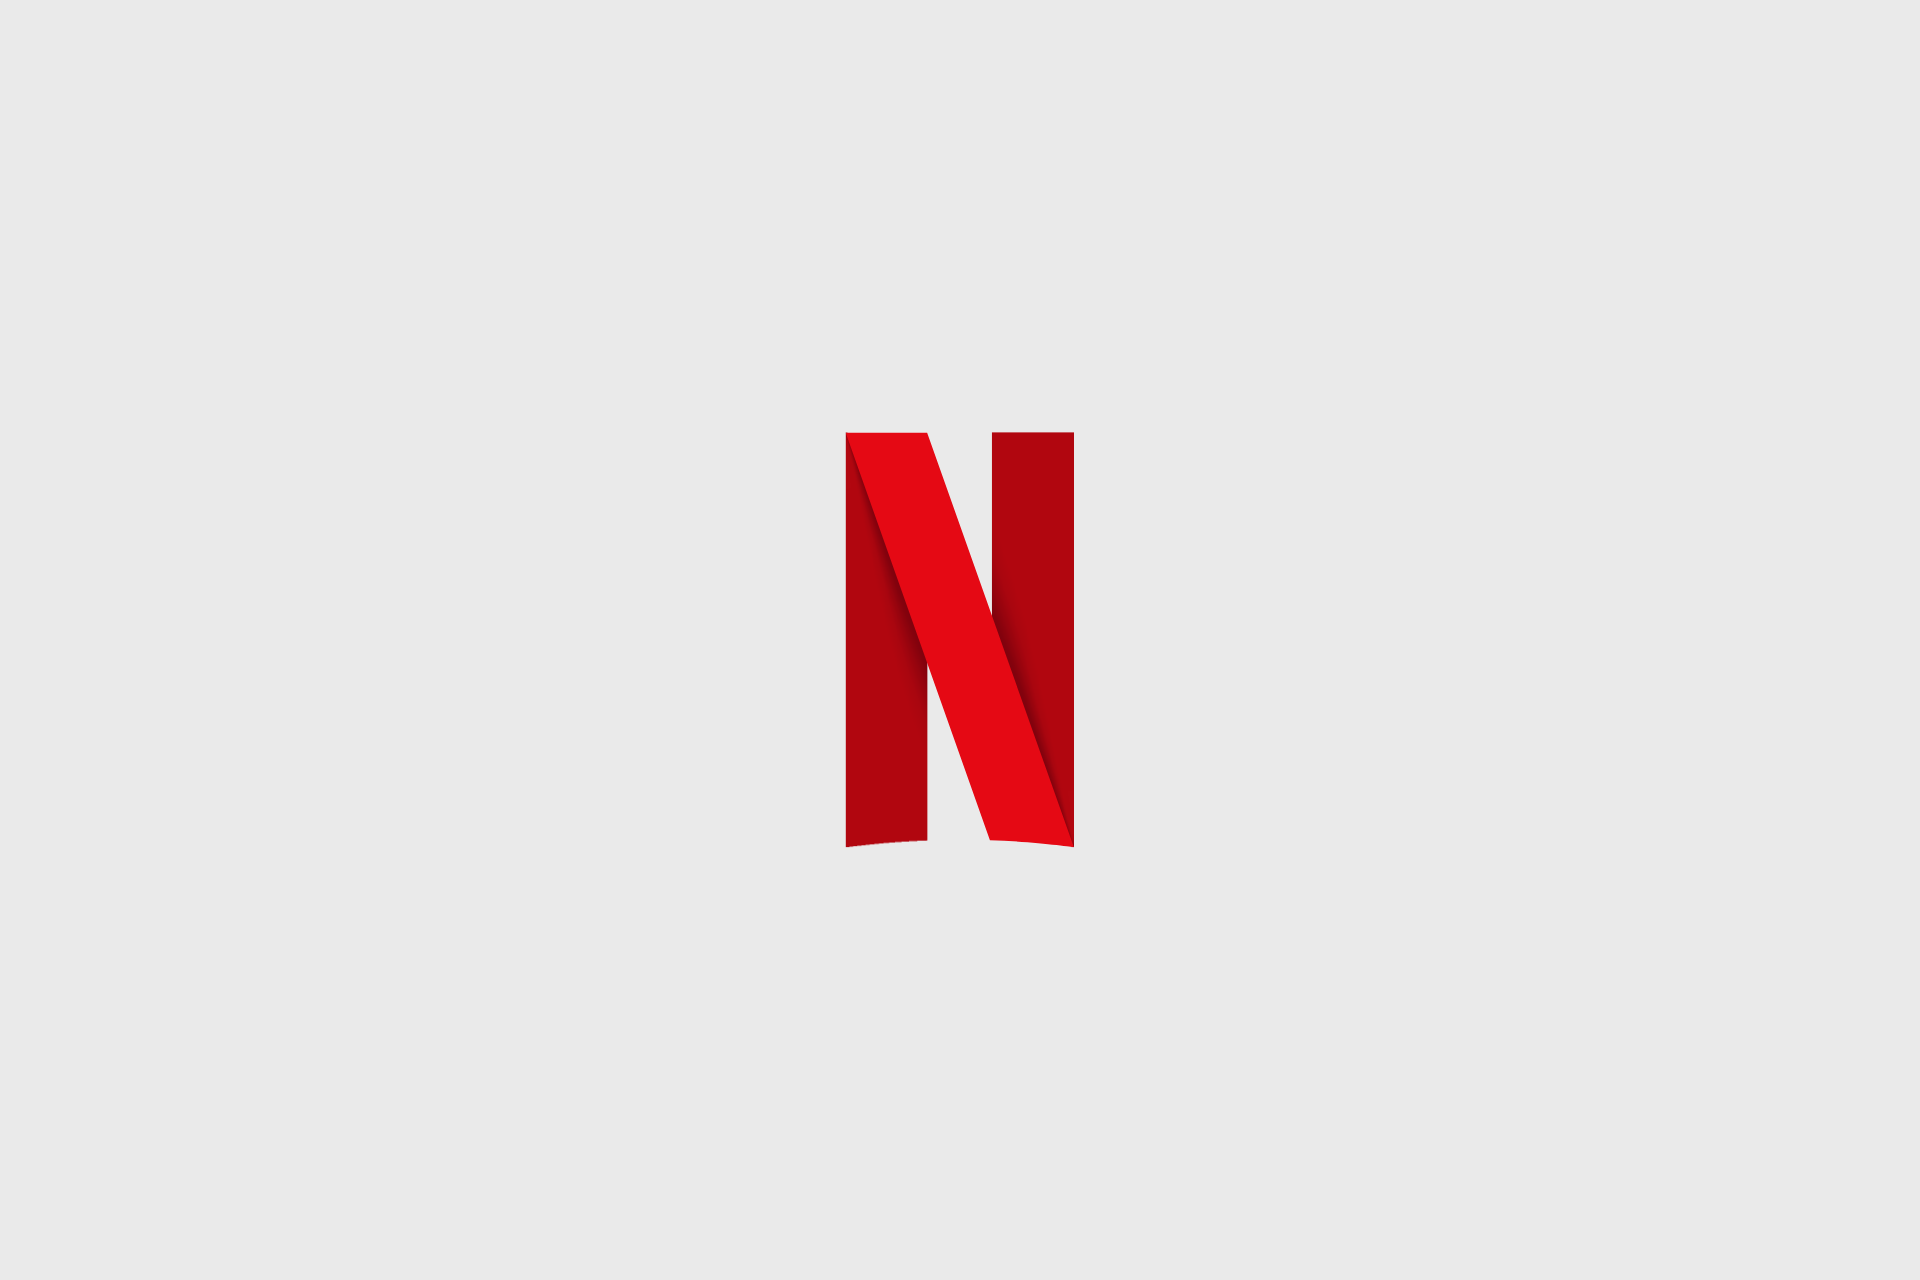 Kuva Netflixin logosta harmaalla taustalla